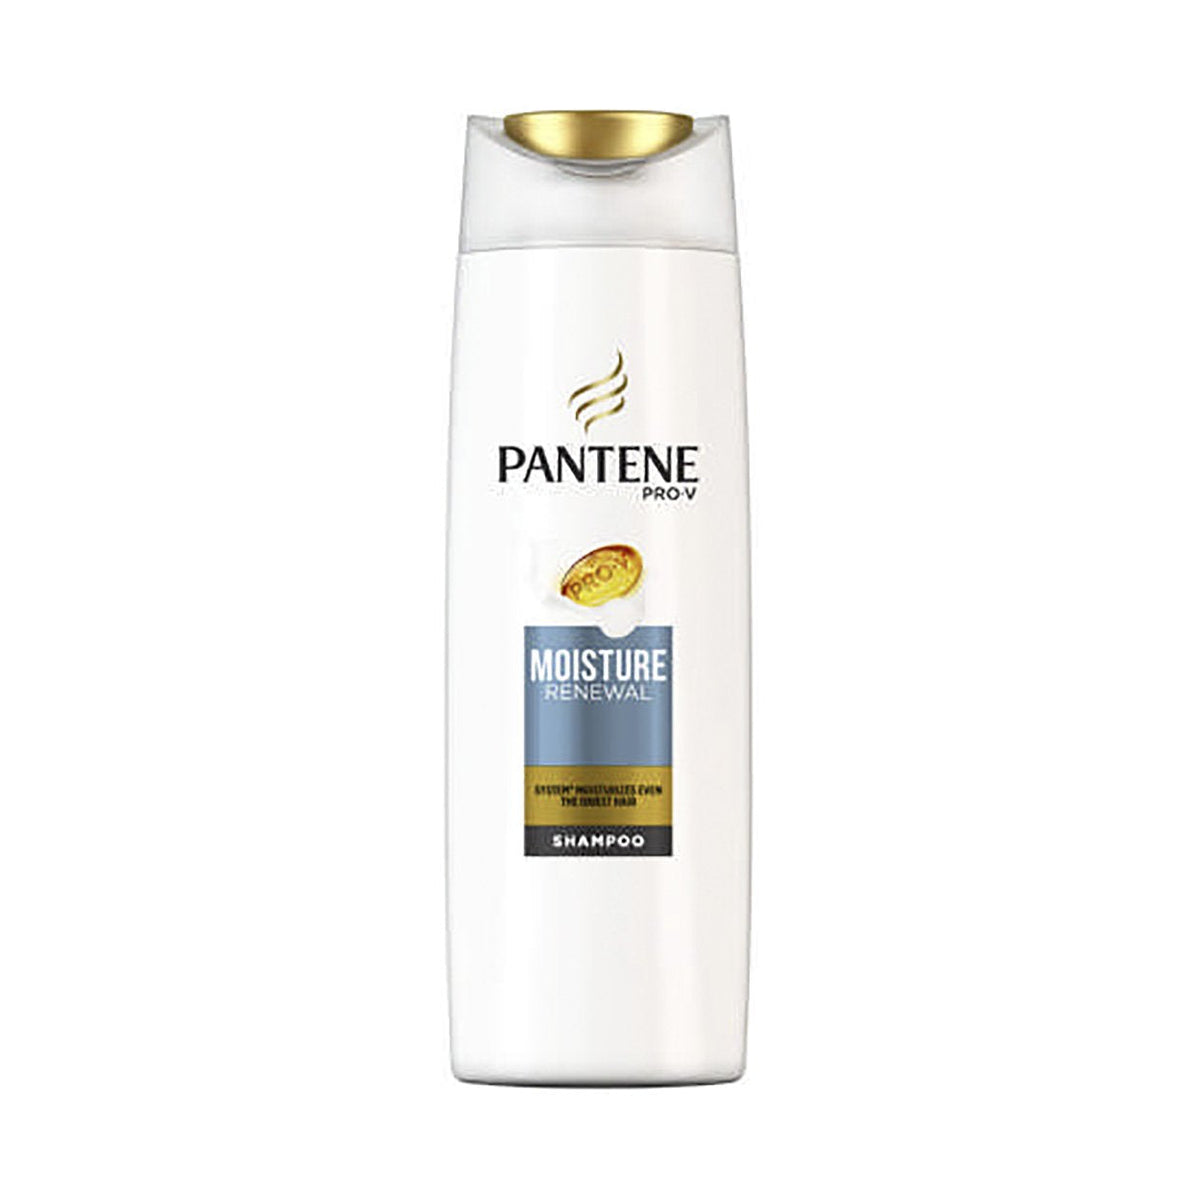 pantene moisture renewal szampon